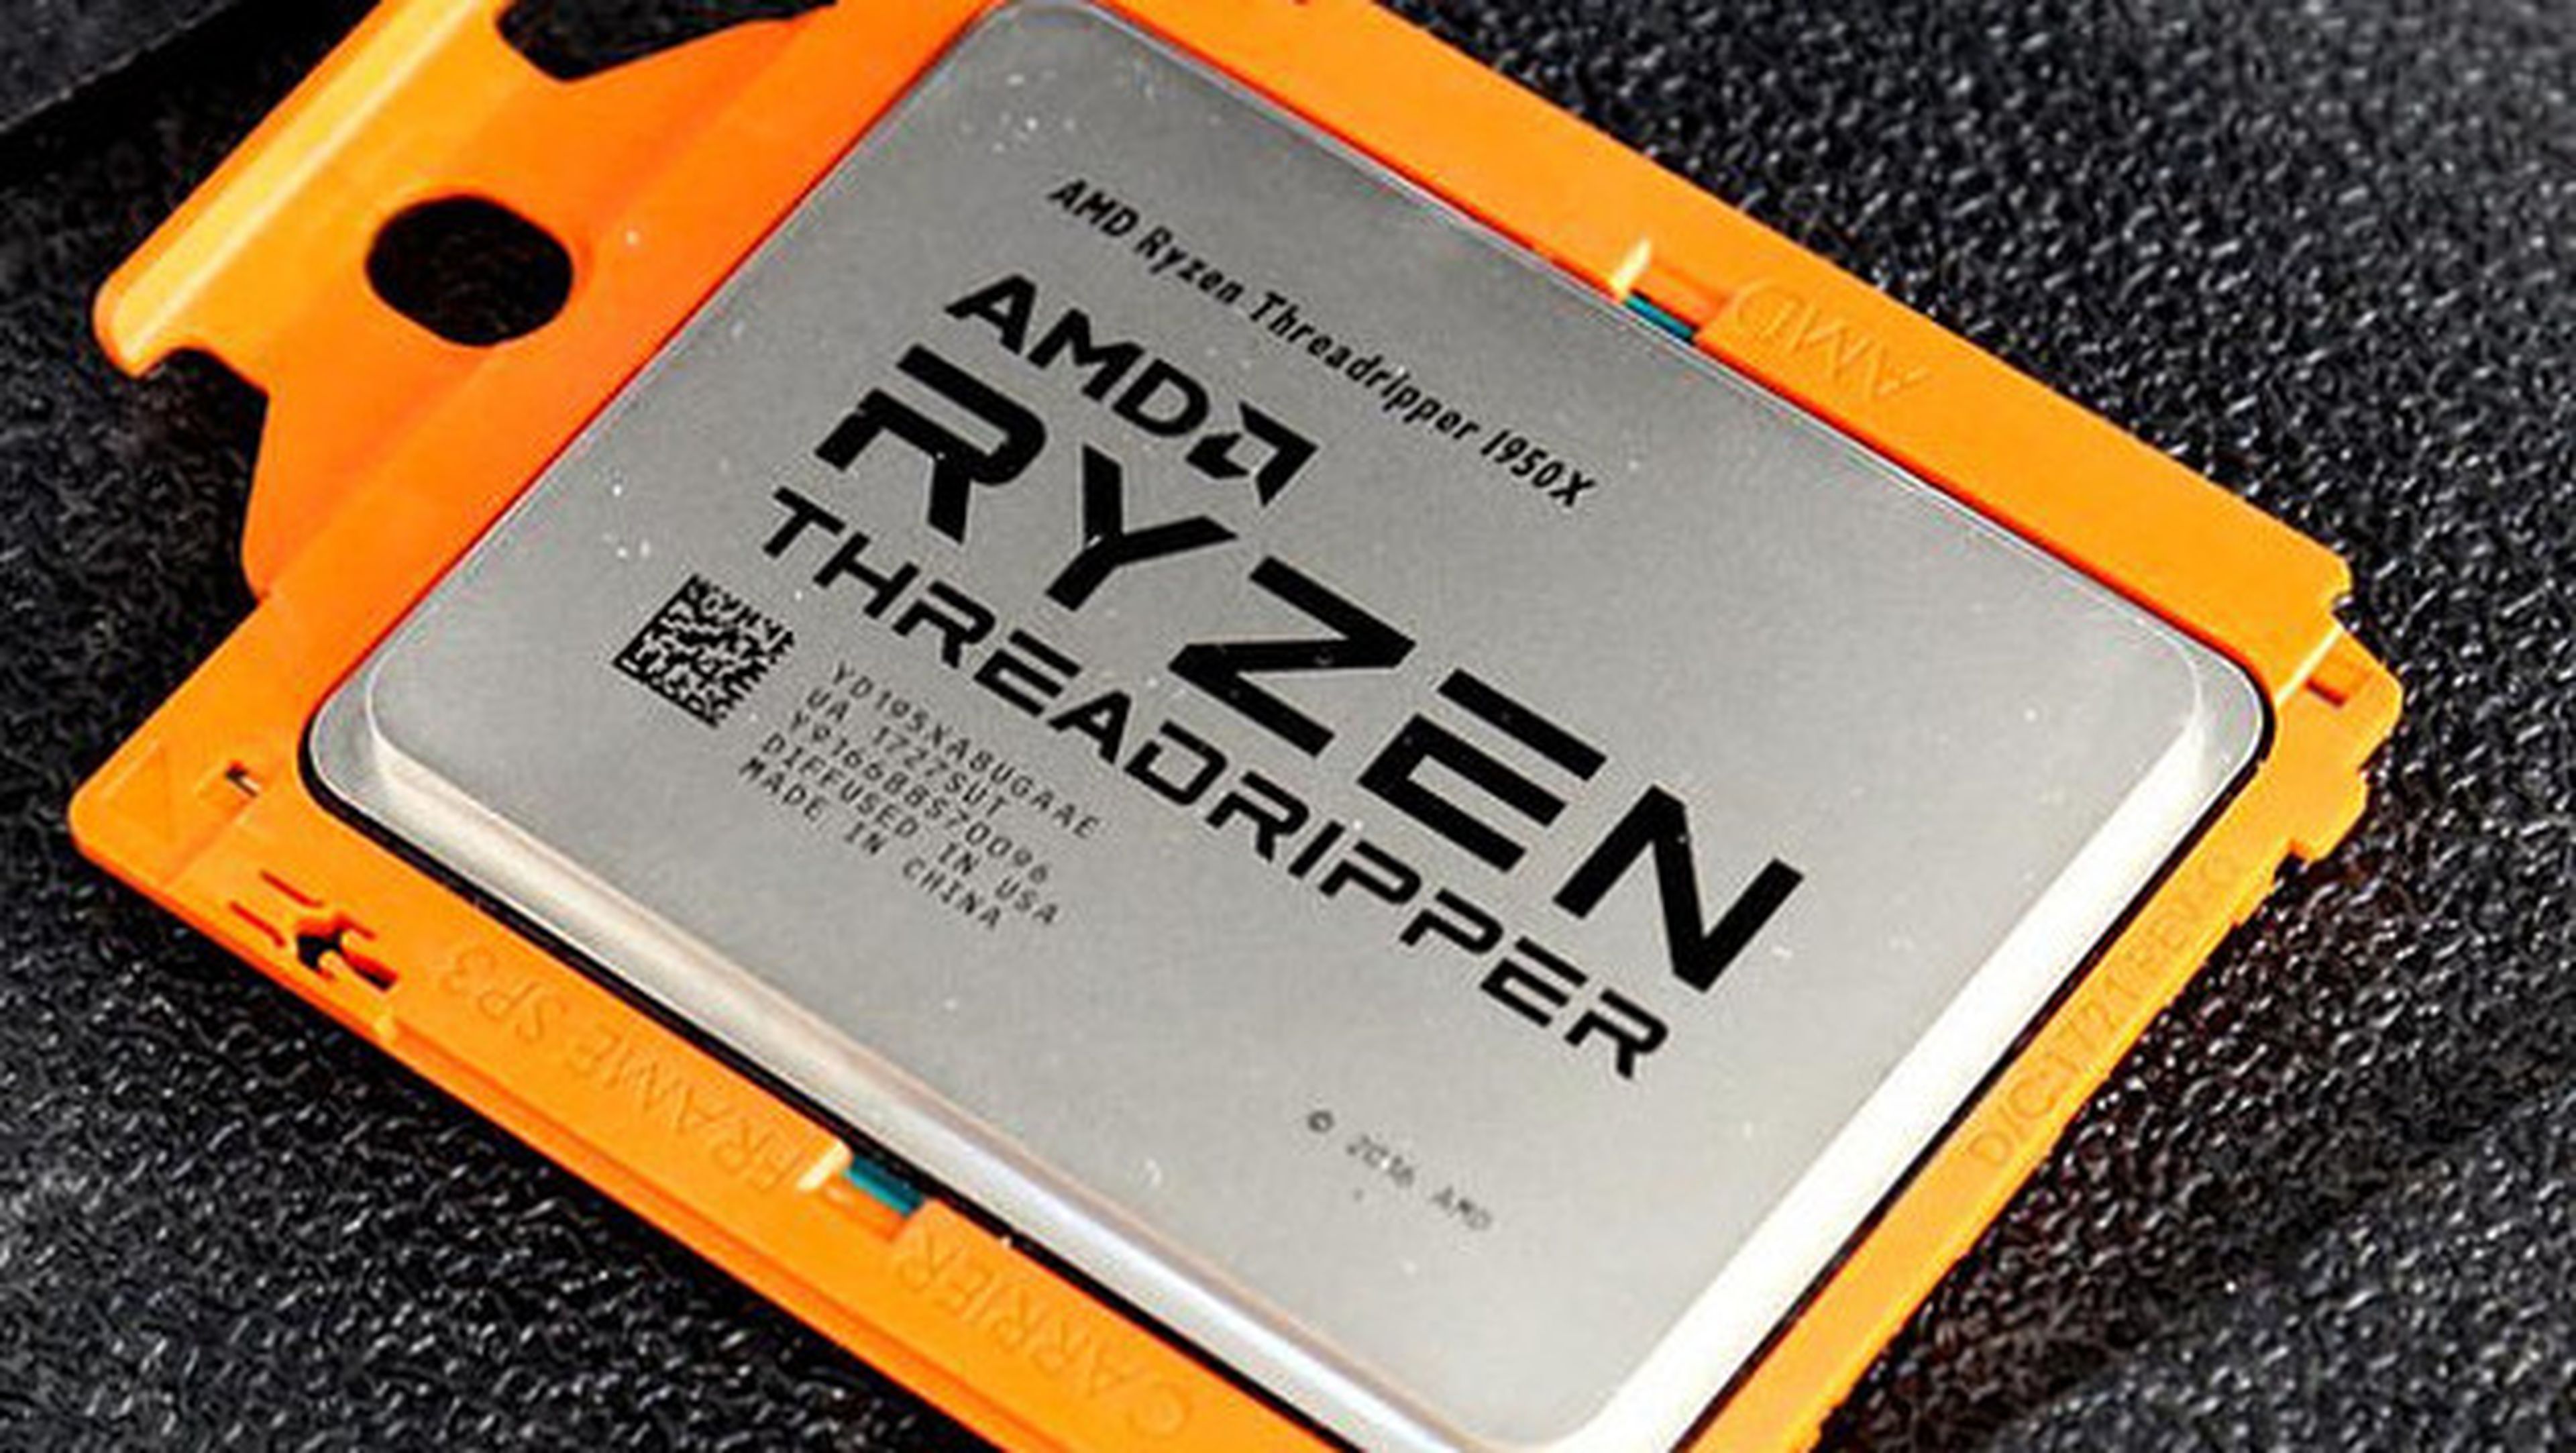 AMD protege sus procesadores contra la vulnerabilidad Spectre con un parche de seguridad.